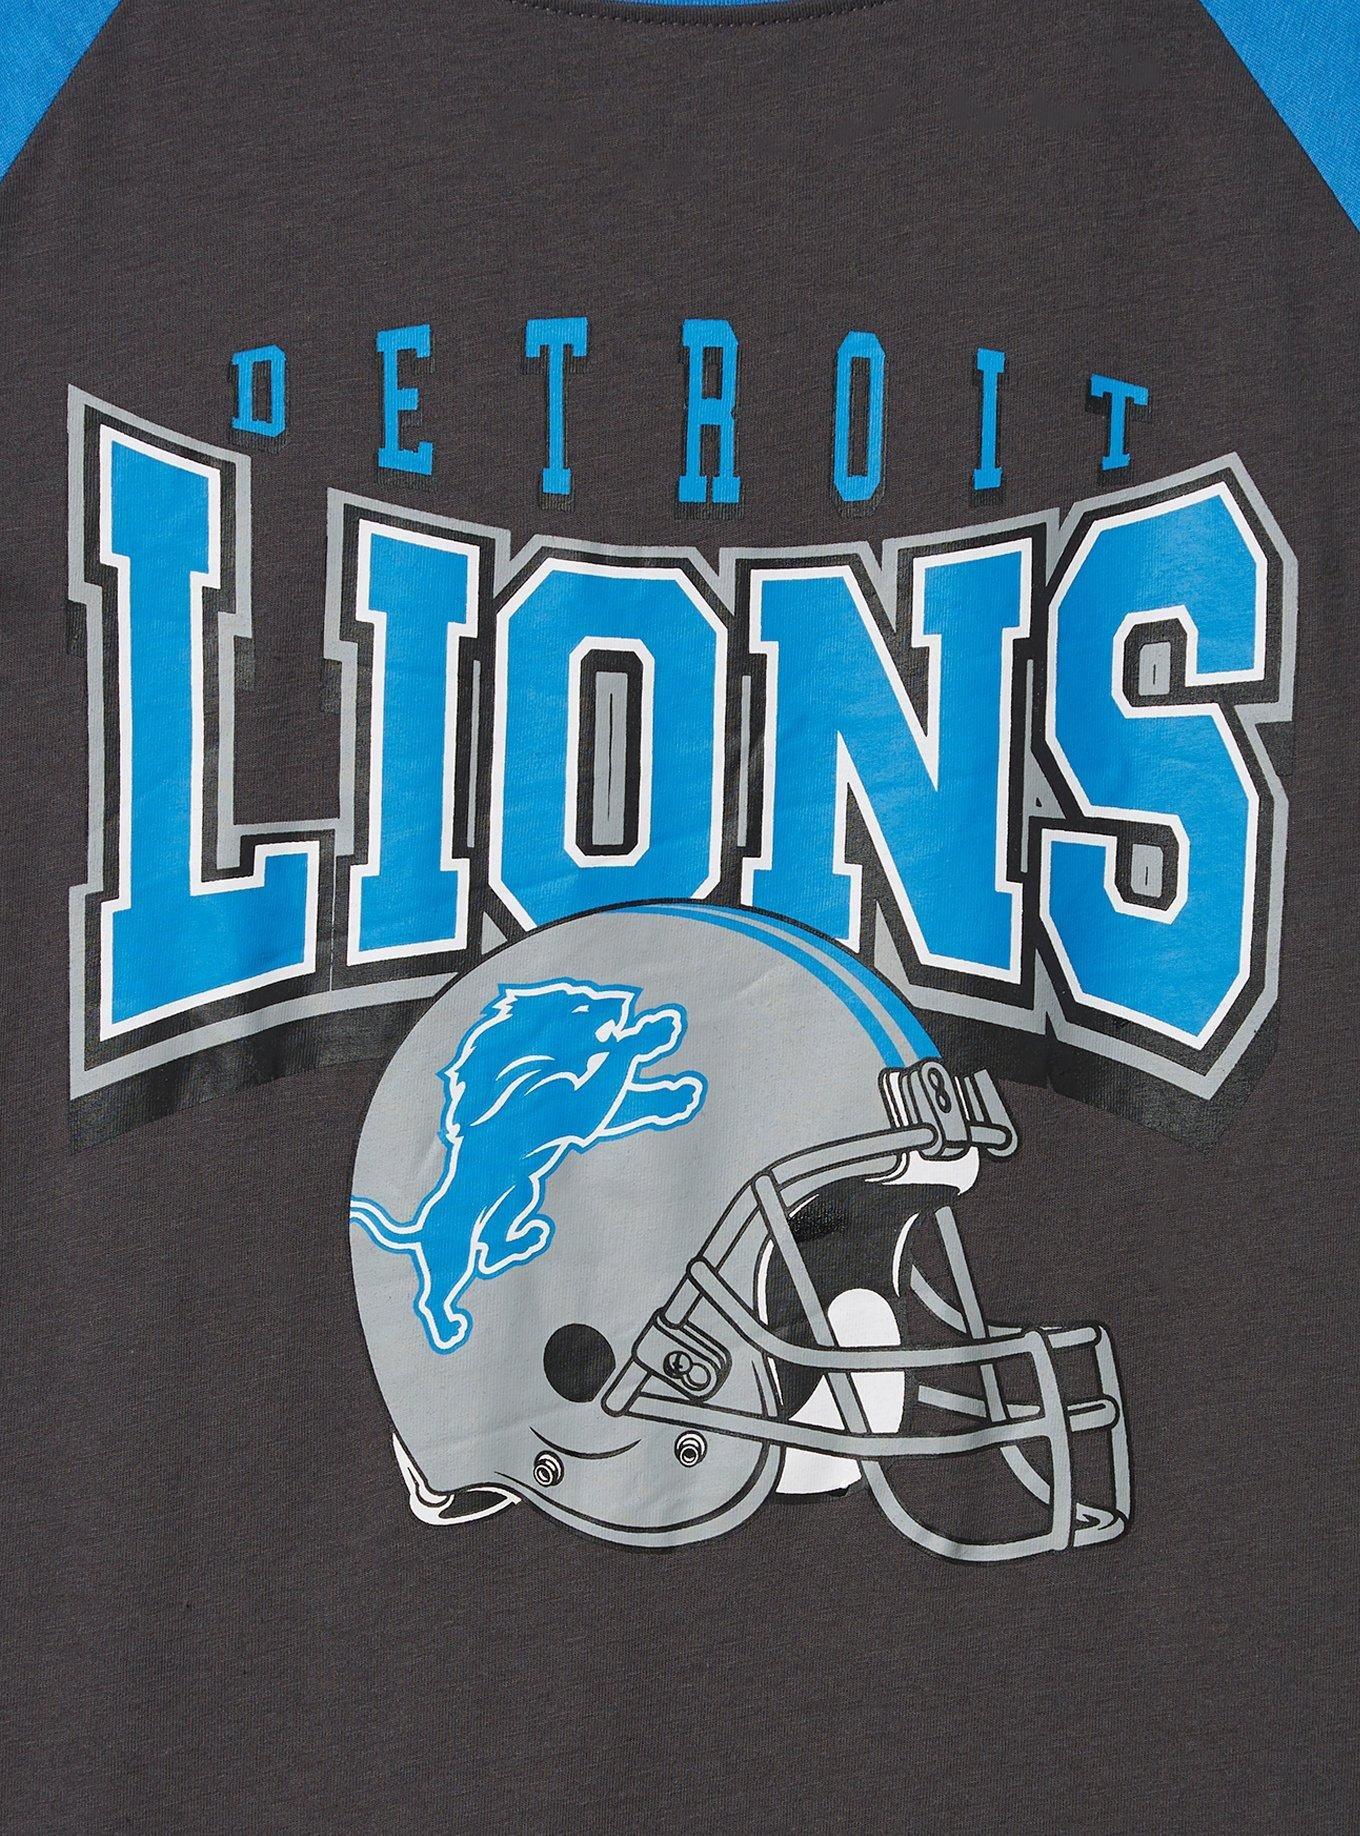 Detroit Lions Women's Break the Tie T-Shirt - Vintage Detroit Collection